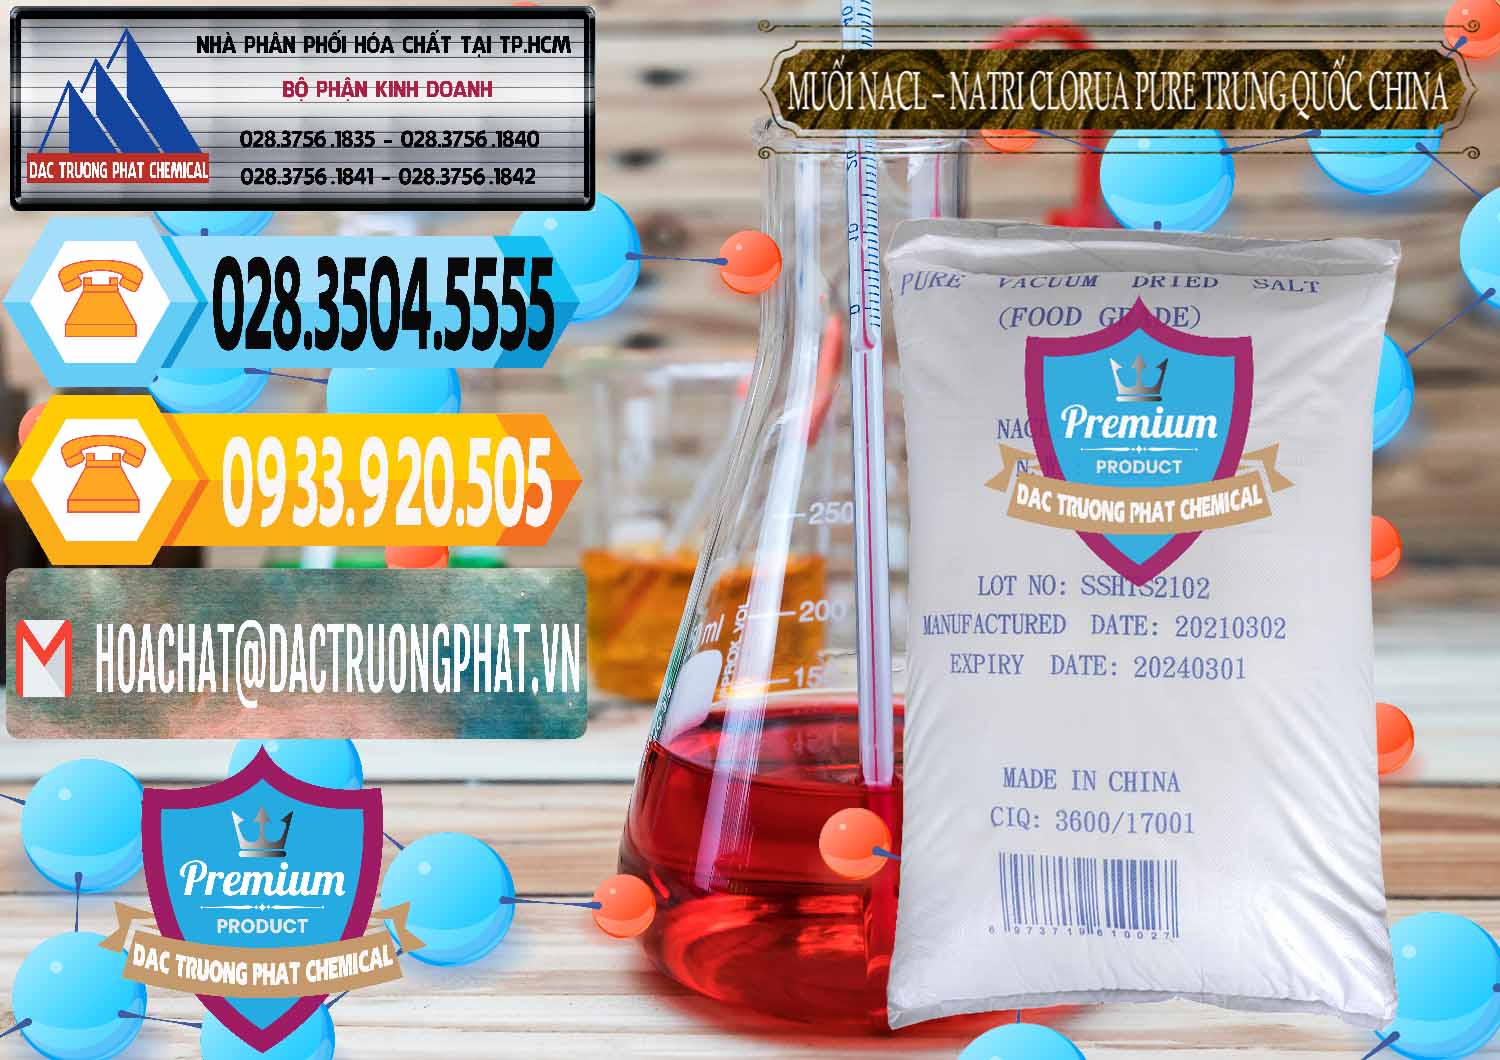 Cty cung cấp & bán Muối NaCL – Sodium Chloride Pure Trung Quốc China - 0230 - Đơn vị chuyên kinh doanh _ phân phối hóa chất tại TP.HCM - hoachattayrua.net